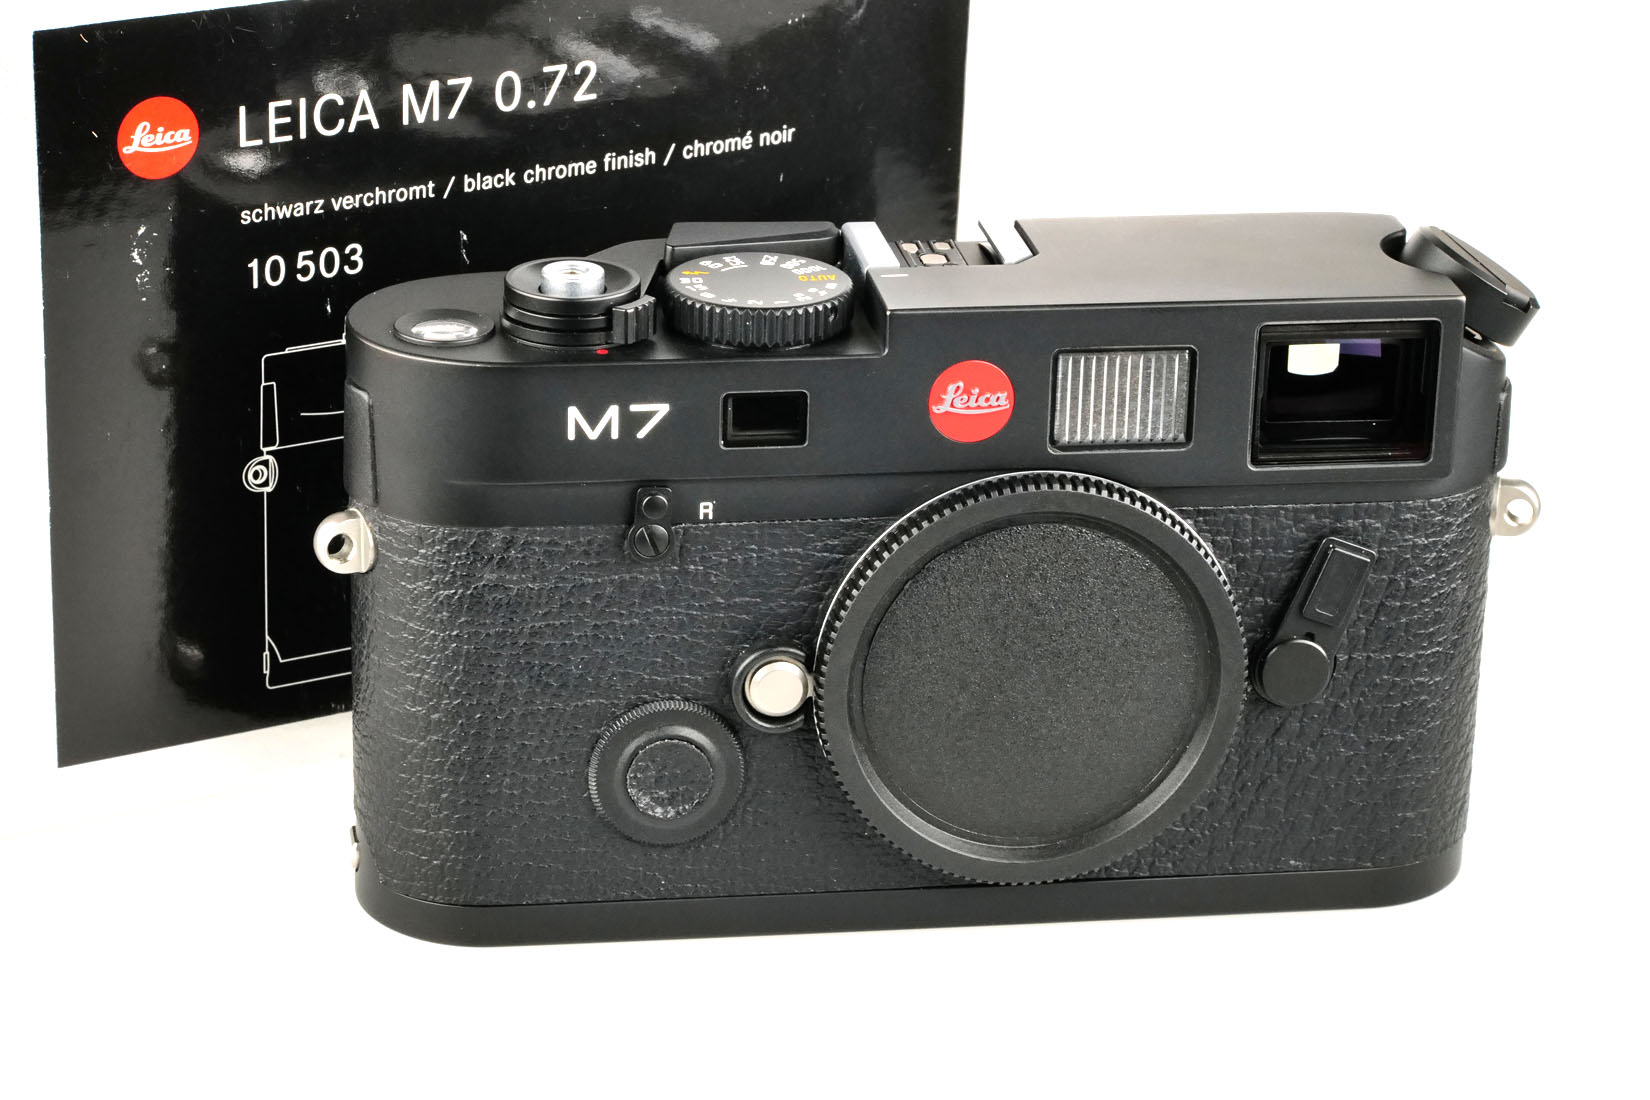 Leica M7 0.72, schwarz verchromt 10503